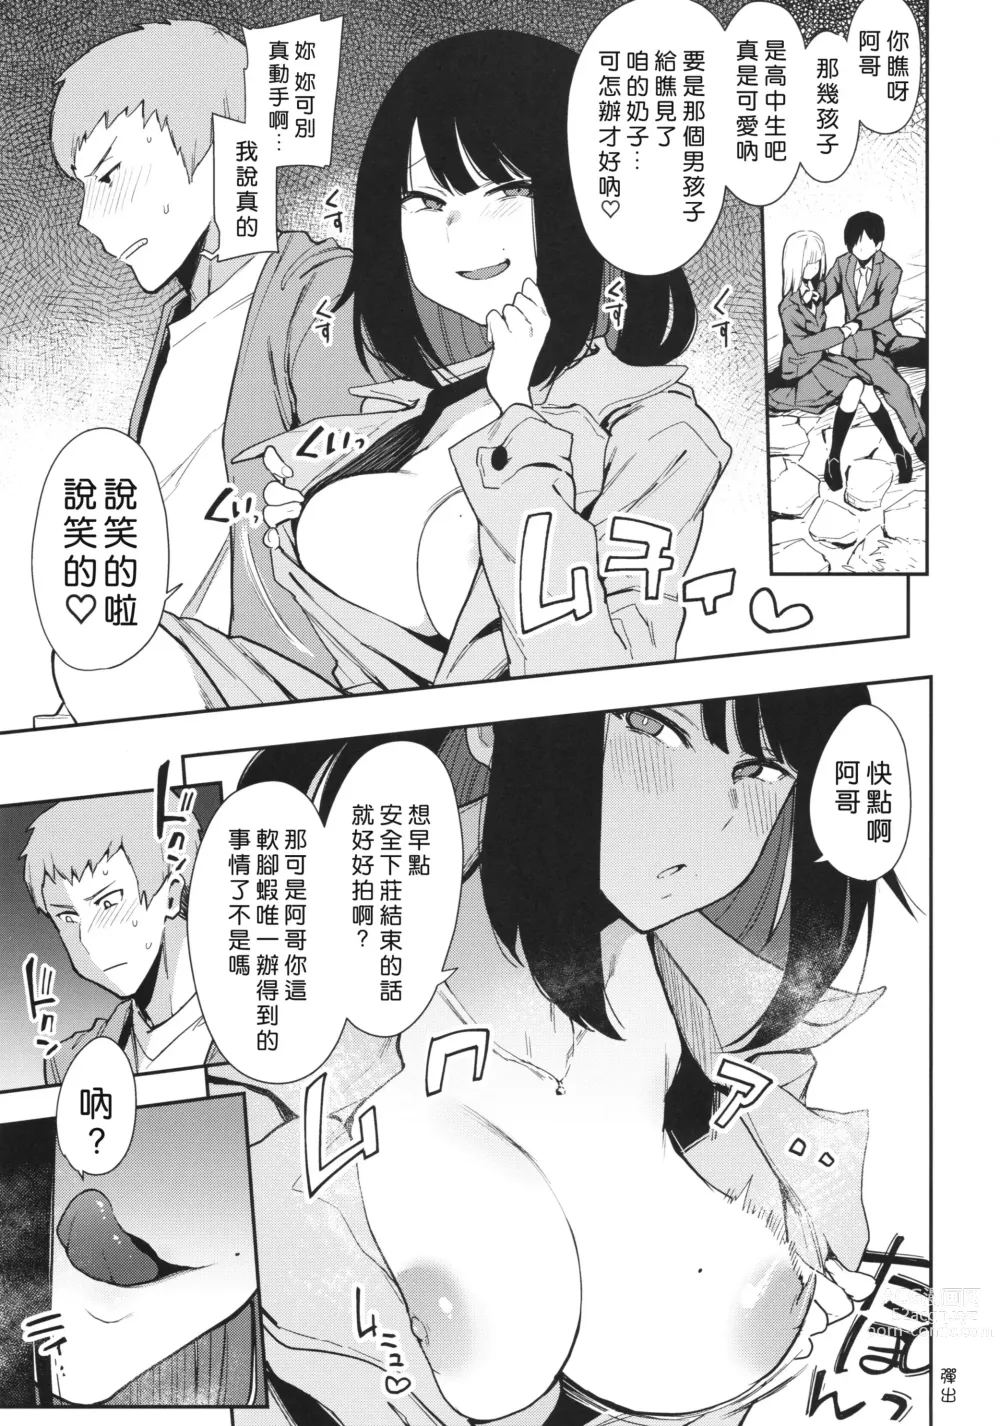 Page 8 of doujinshi Chouko I-V